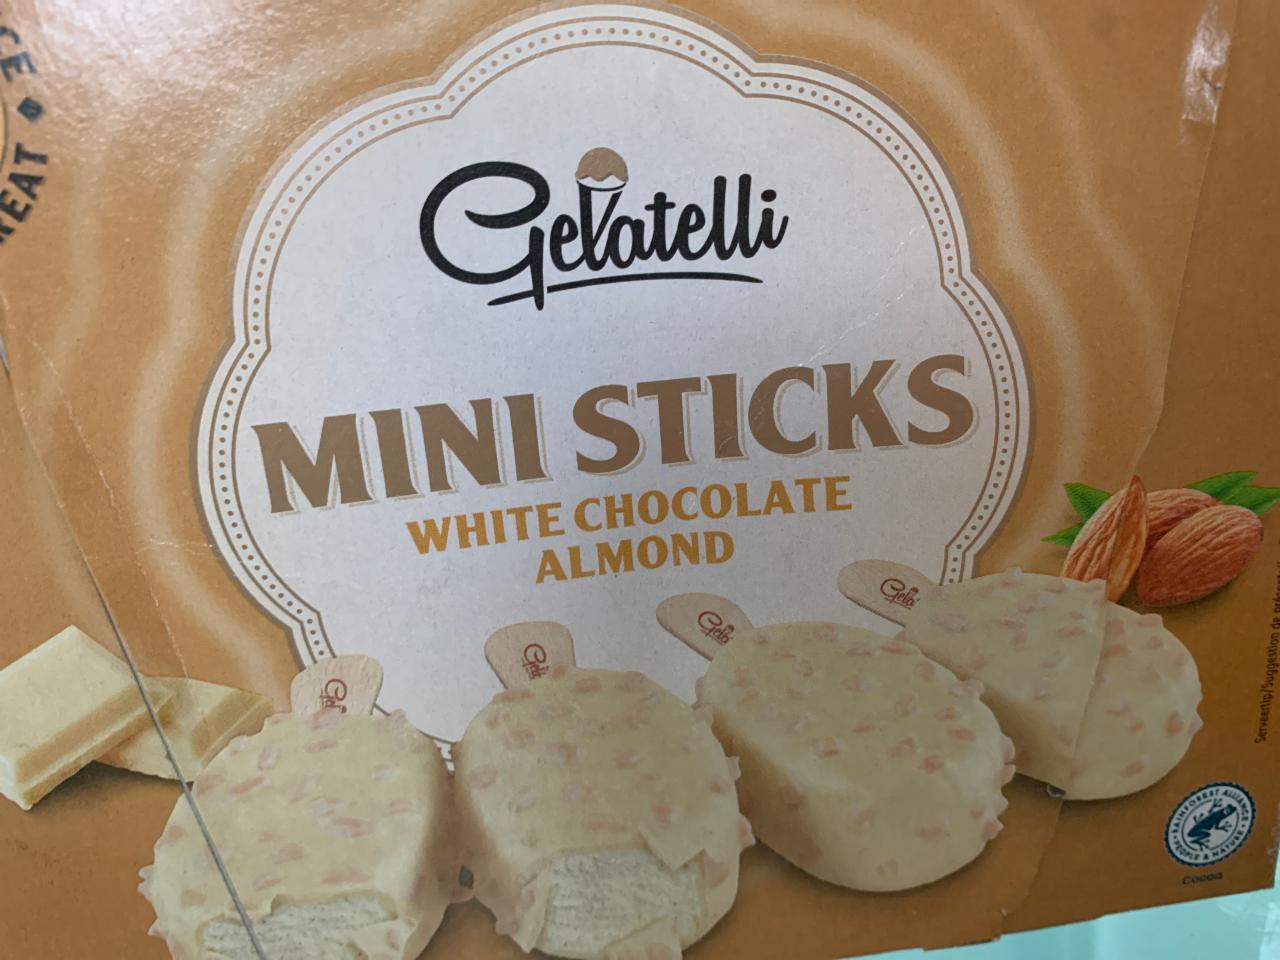 Zdjęcia - Gelatelli mini sticks white chocolate almond